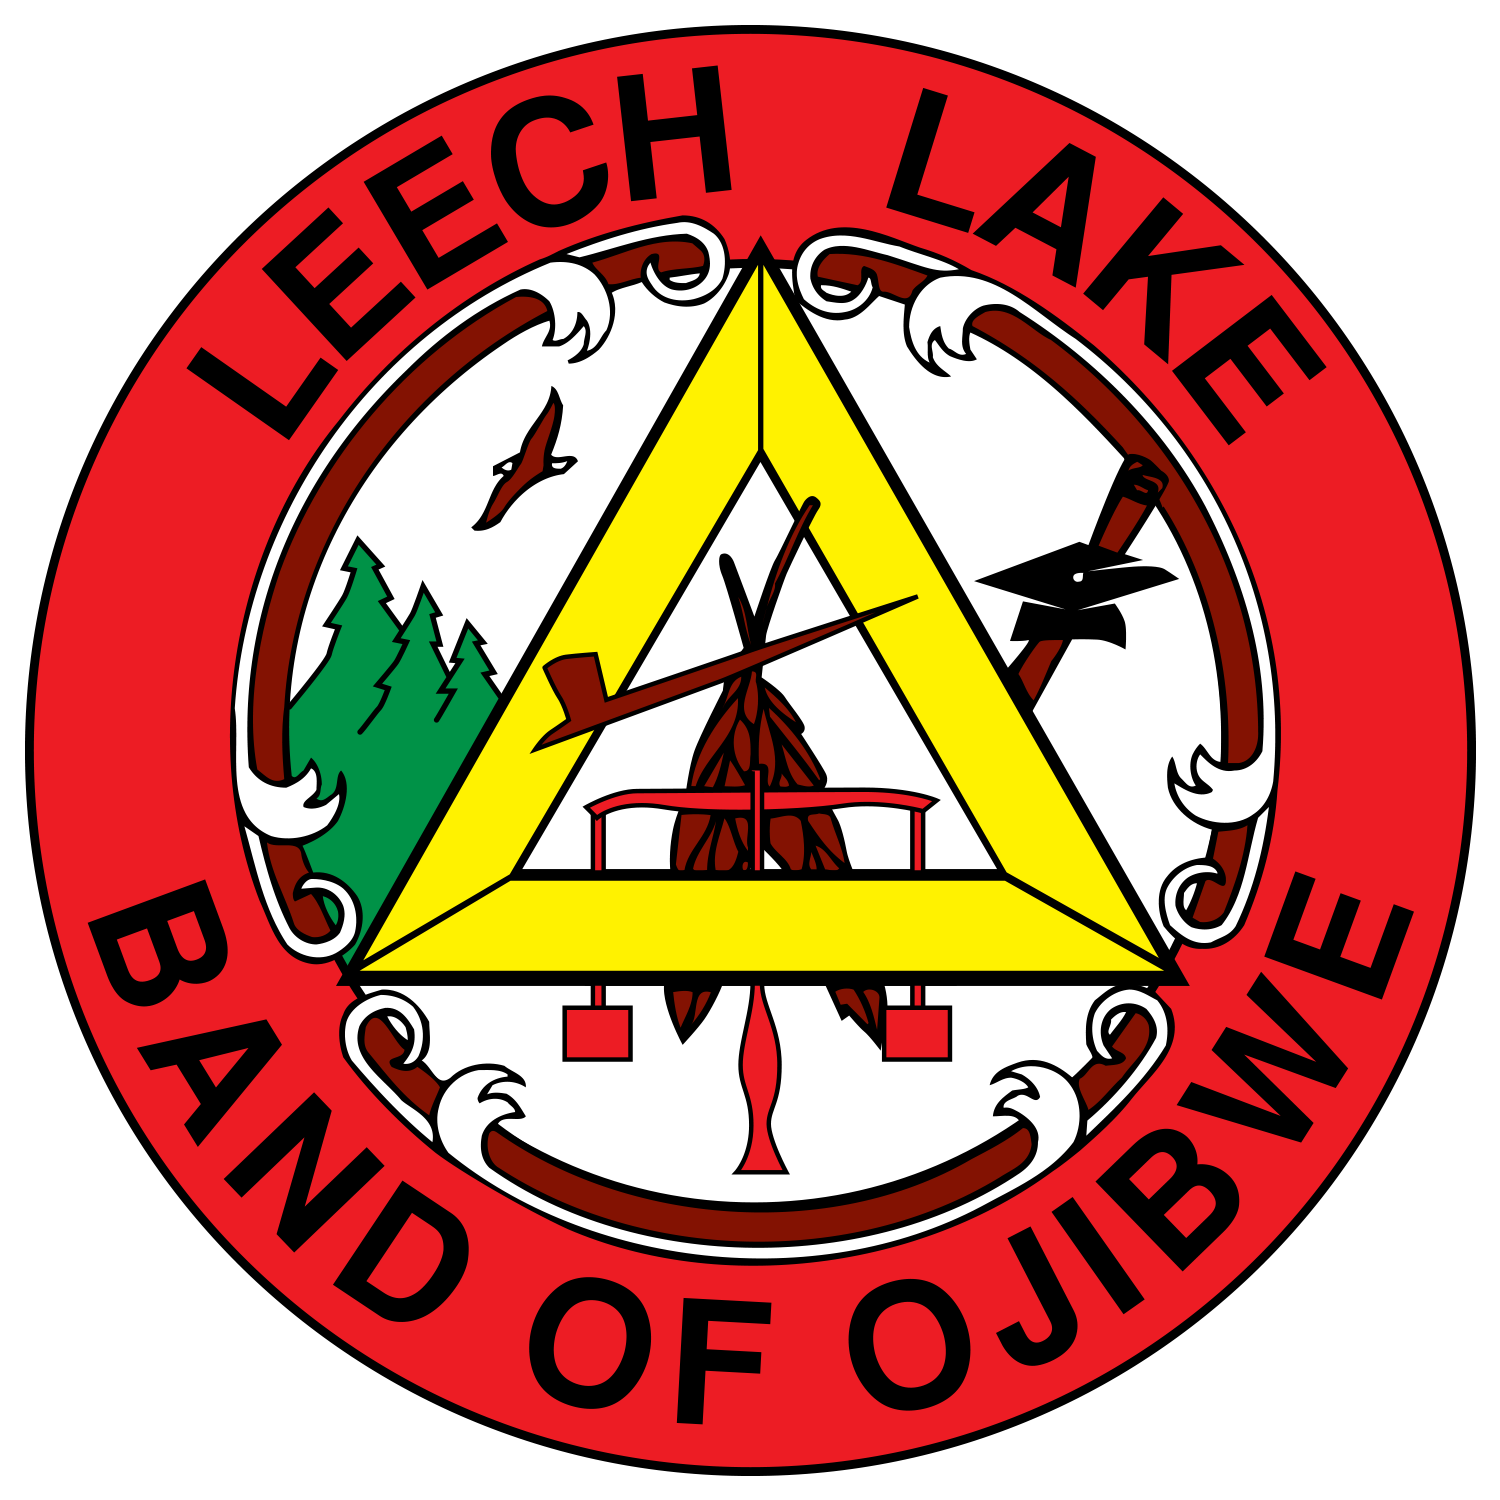 Leech Lake Band of Ojibwe